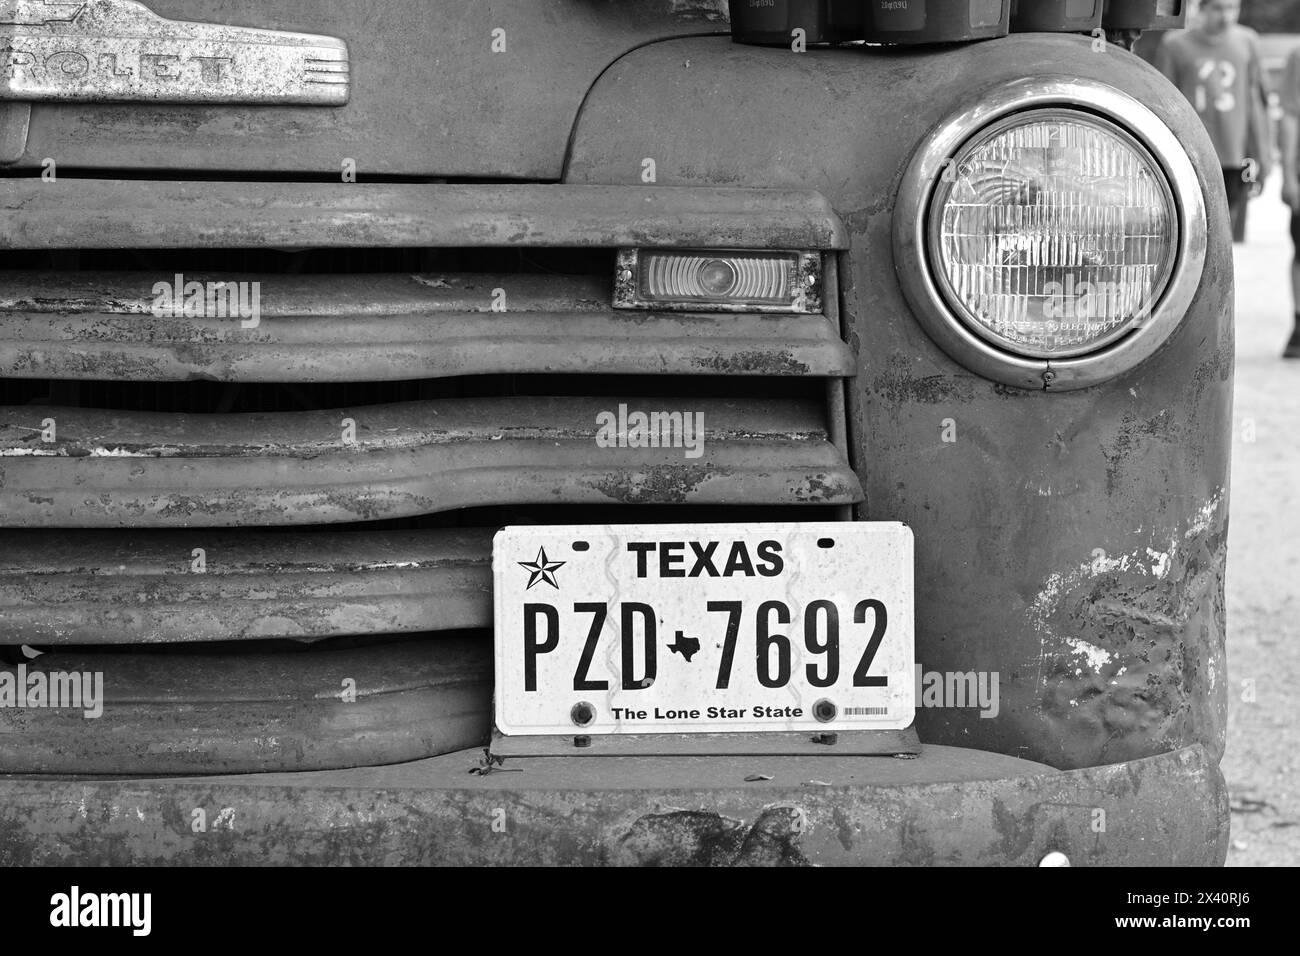 Calandre de pick-up Chevrolet vintage avec étiquettes Texas en noir et blanc Banque D'Images